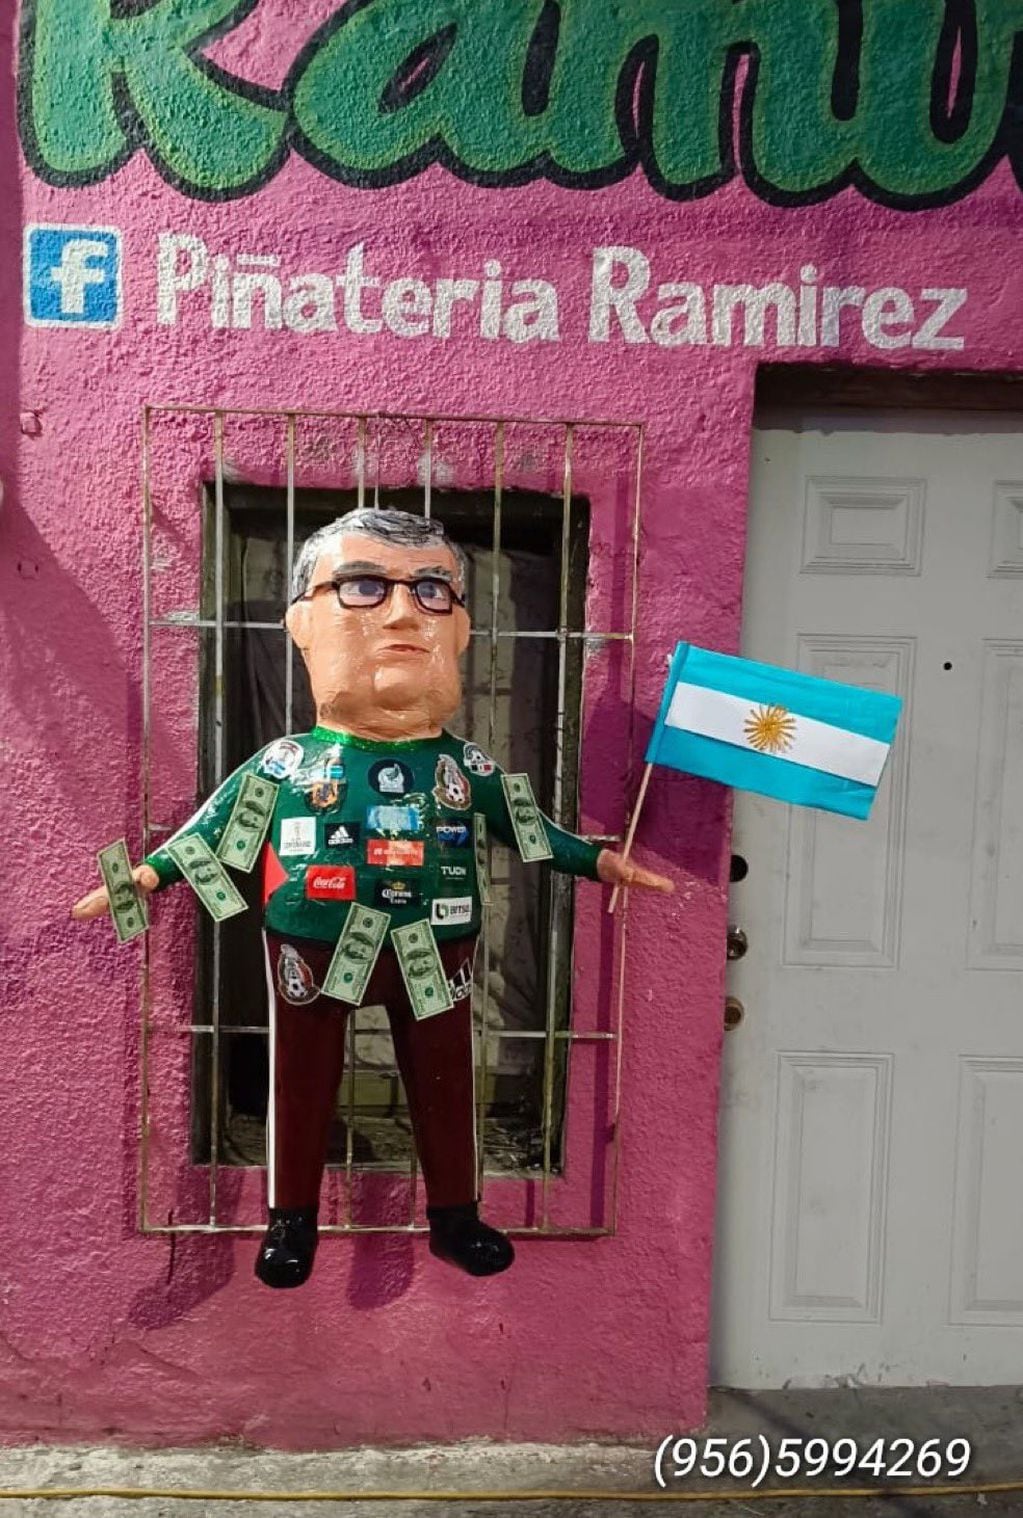 La piñata, además de lucir una camiseta de la Selección Mexicana, tiene dólares de utilería adheridos y una bandera Argentina en su mano izquierda. Foto: Facebook Piñatería Ramirez.